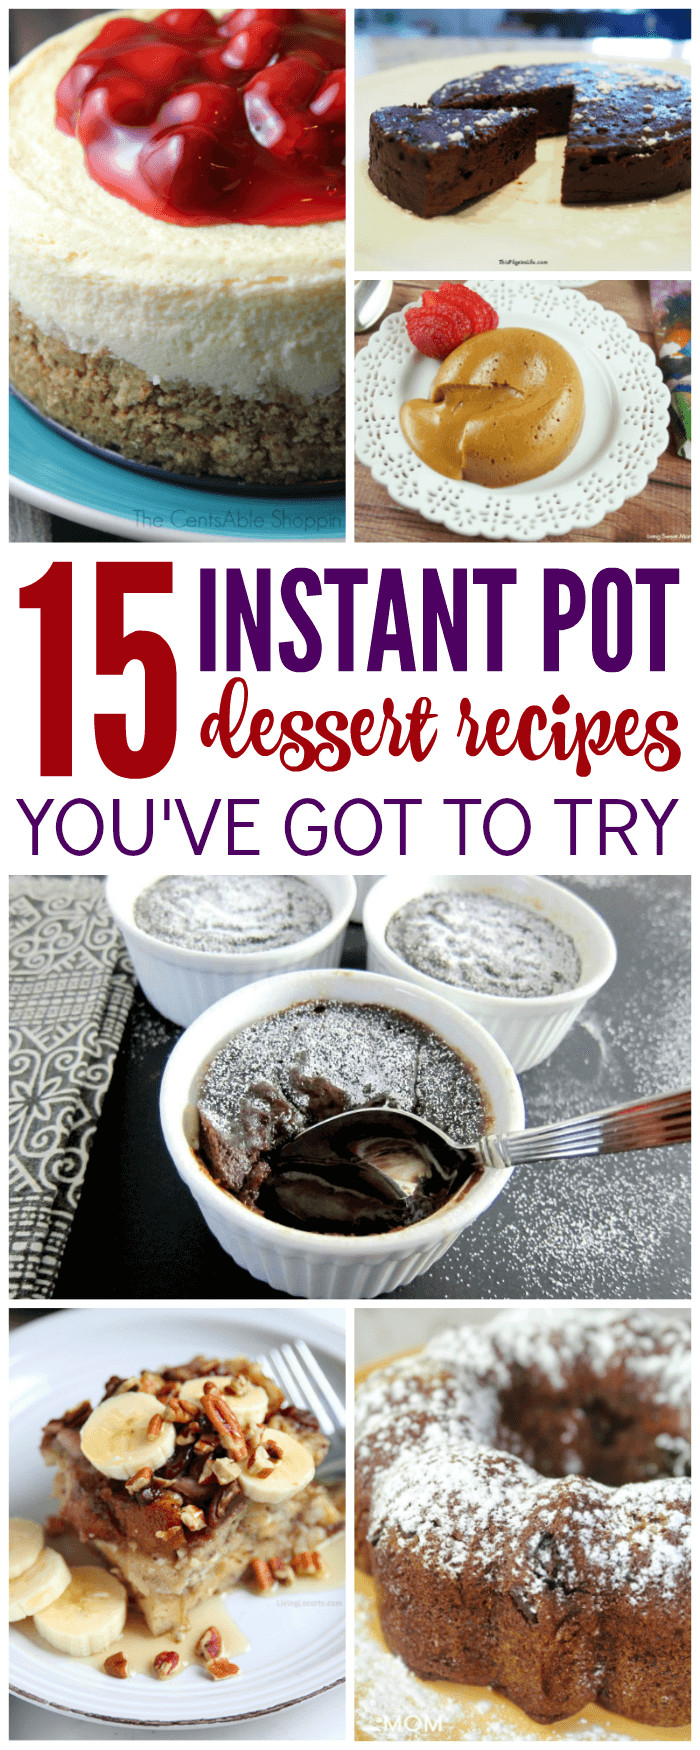 Instant Pot Desserts Healthy
 Instant Pot Dessert Recipes